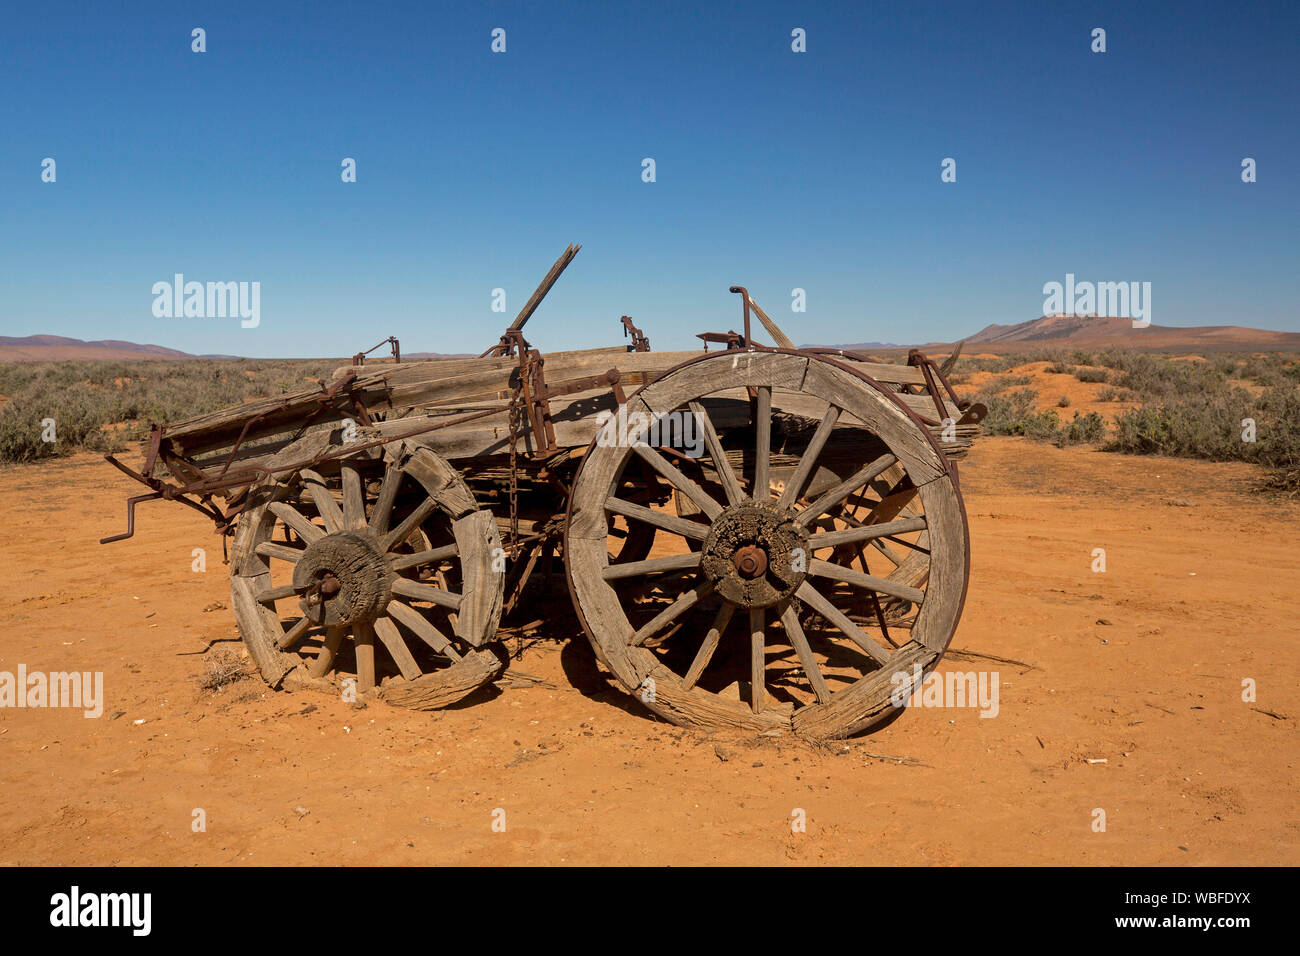 Granja de caballos viejo vagón abandonado en remoto y árido paisaje outback con suelo rojo y vegetación baja en llanuras bajo un cielo azul, en el sur de Australia Foto de stock